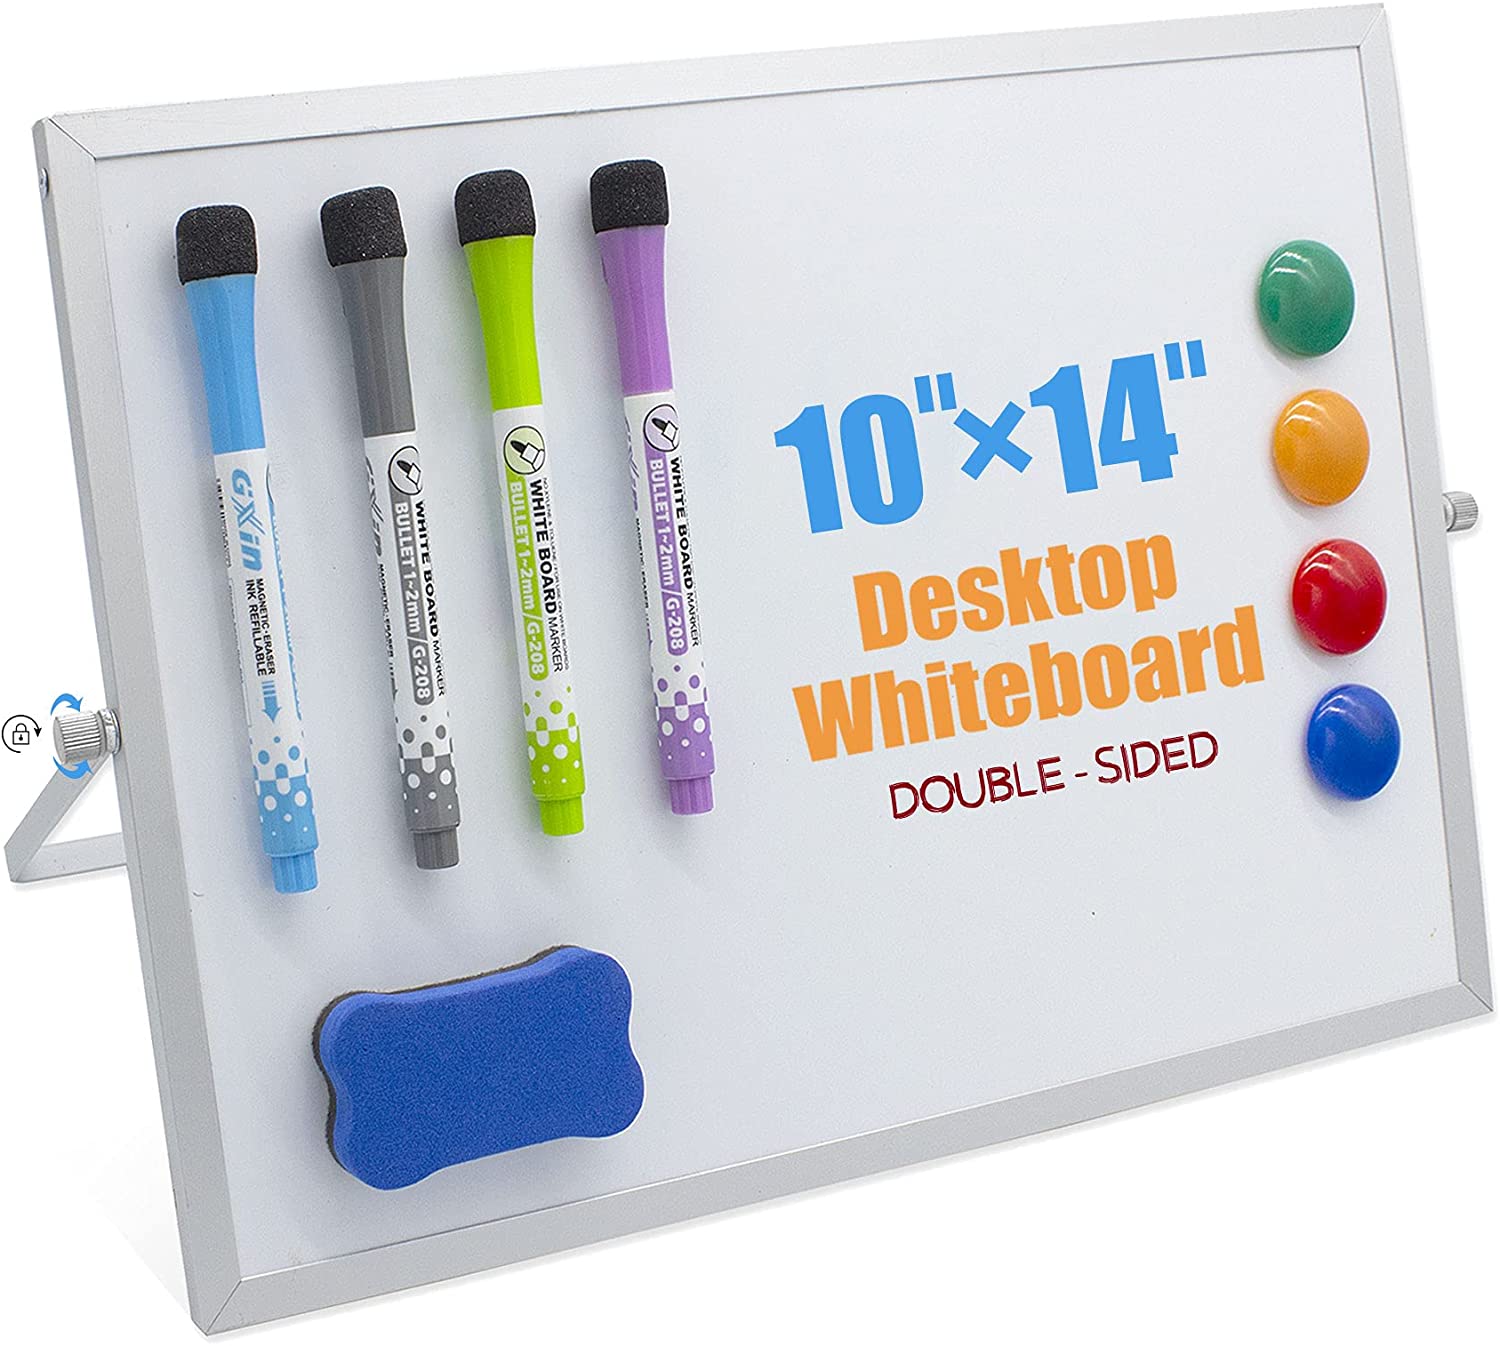 Teskyer Desktop Dry Erase White Board, 10 X 14 Portable Double